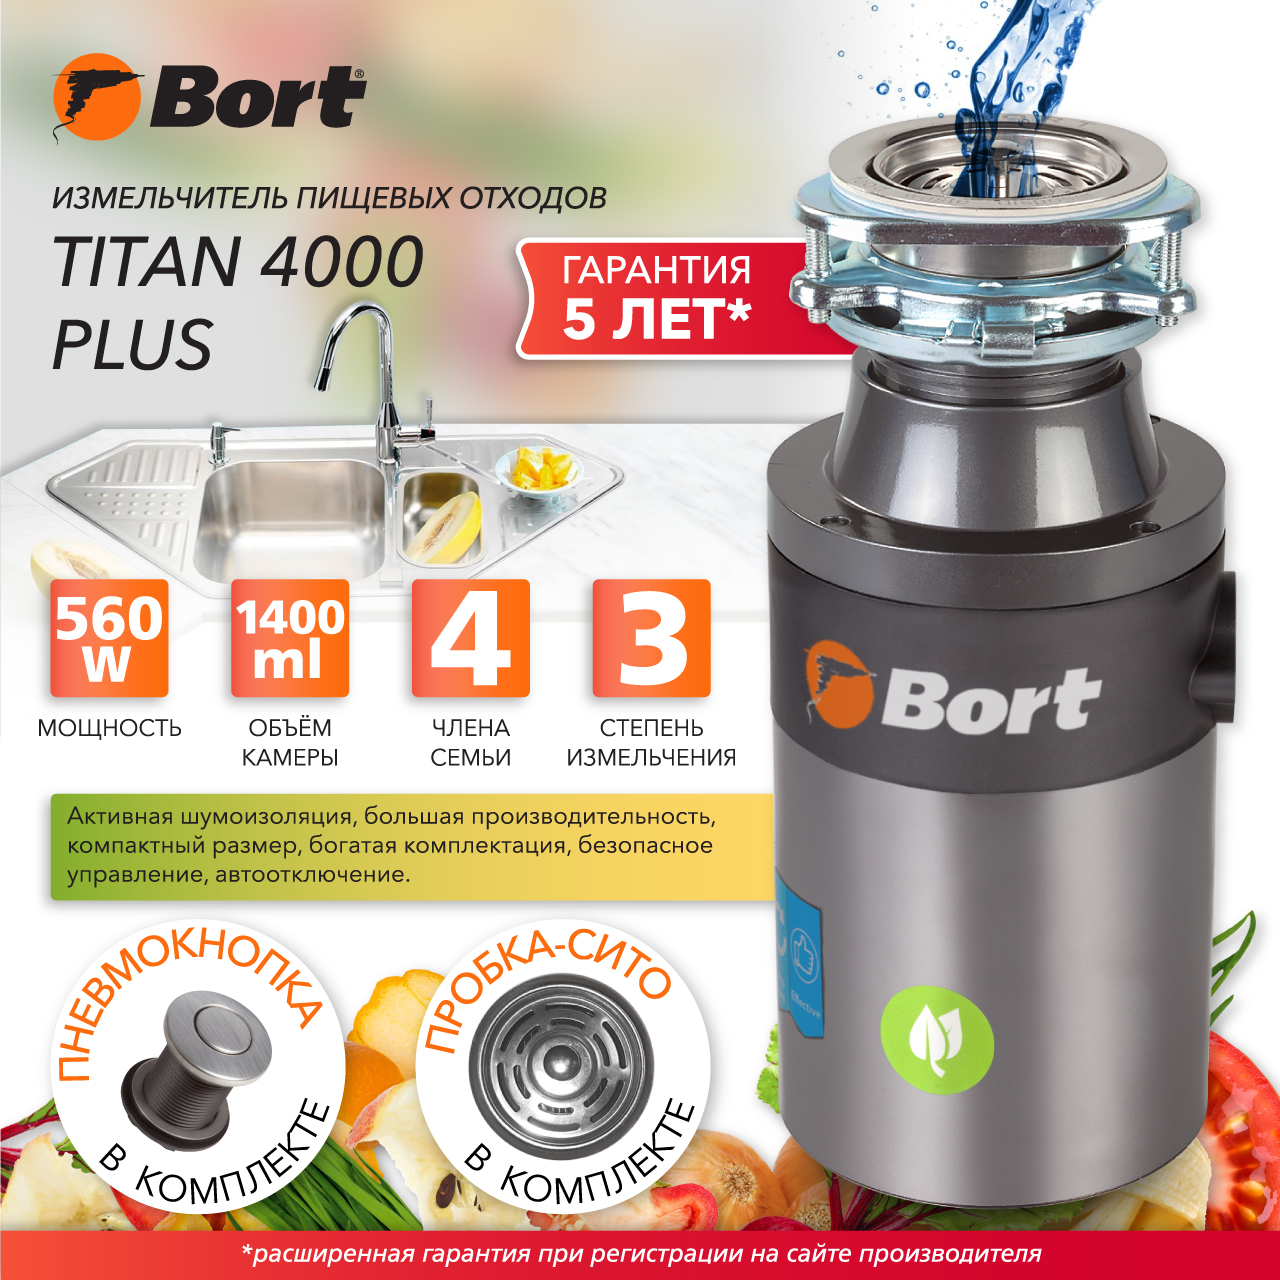 Измельчитель пищевых отходов Bort TITAN 4000 PLUS (91275776) серебристый измельчитель пищевых отходов bort master eco control